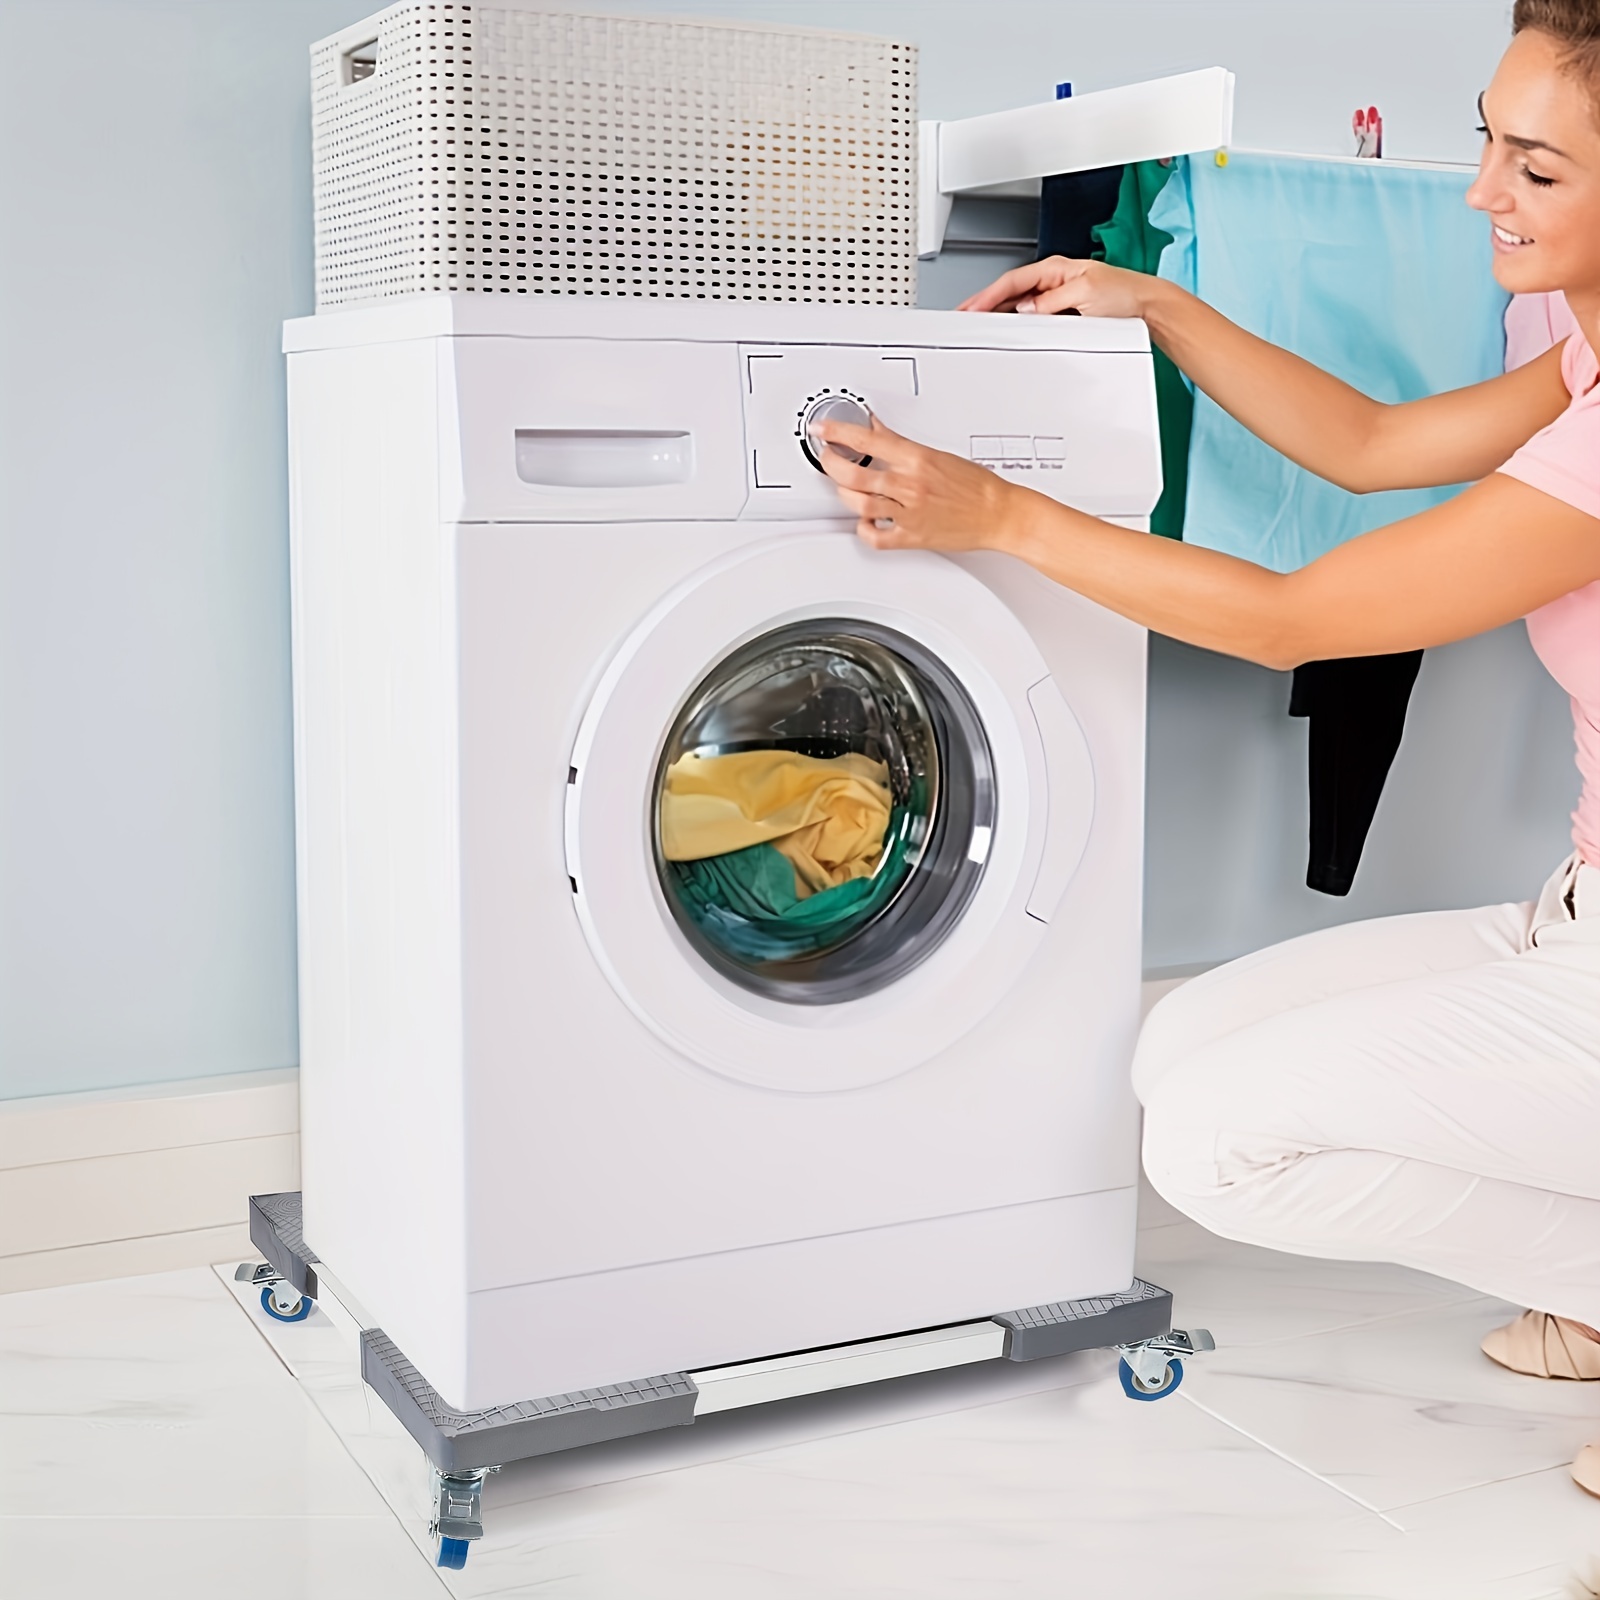 Soporte sobre lavadora - Cabrera soluciones para el Hogar